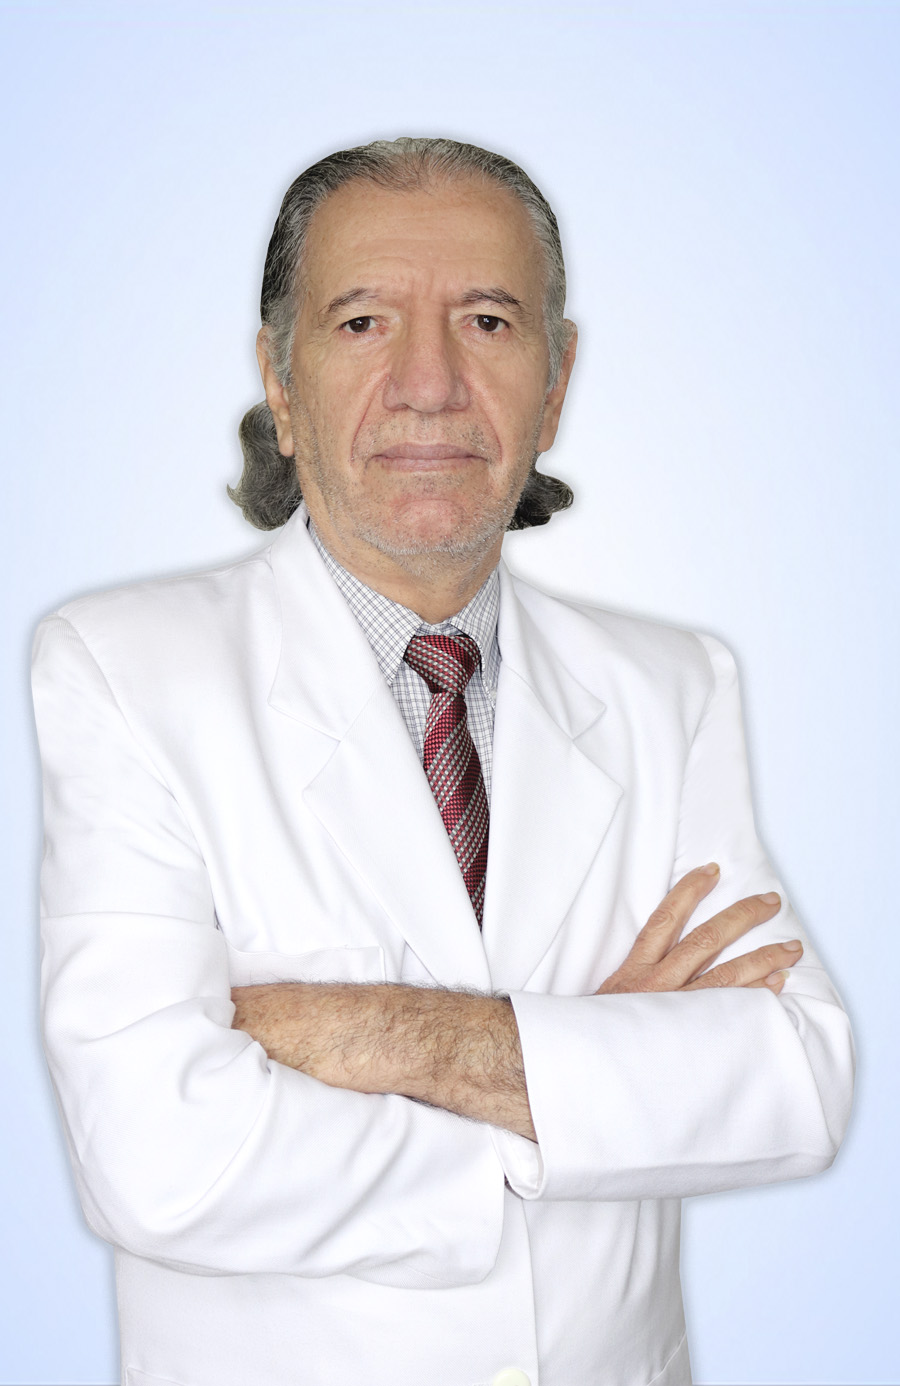 DR. CERDEÑA